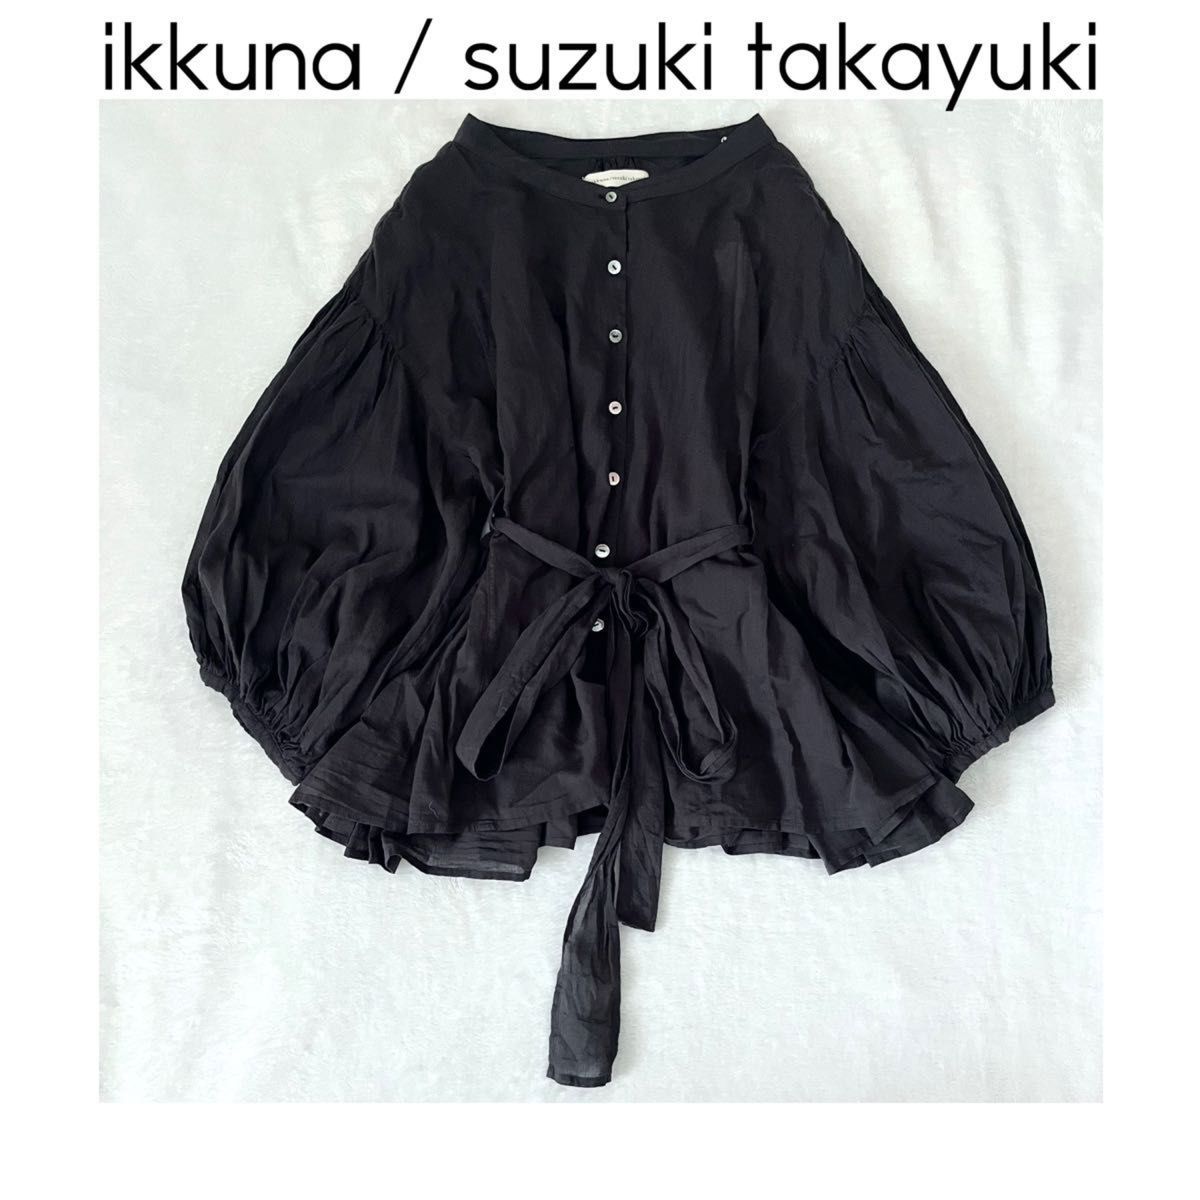 ikkuna suzuki takayuki puff-sleeve blouse パフスリーブブラウス